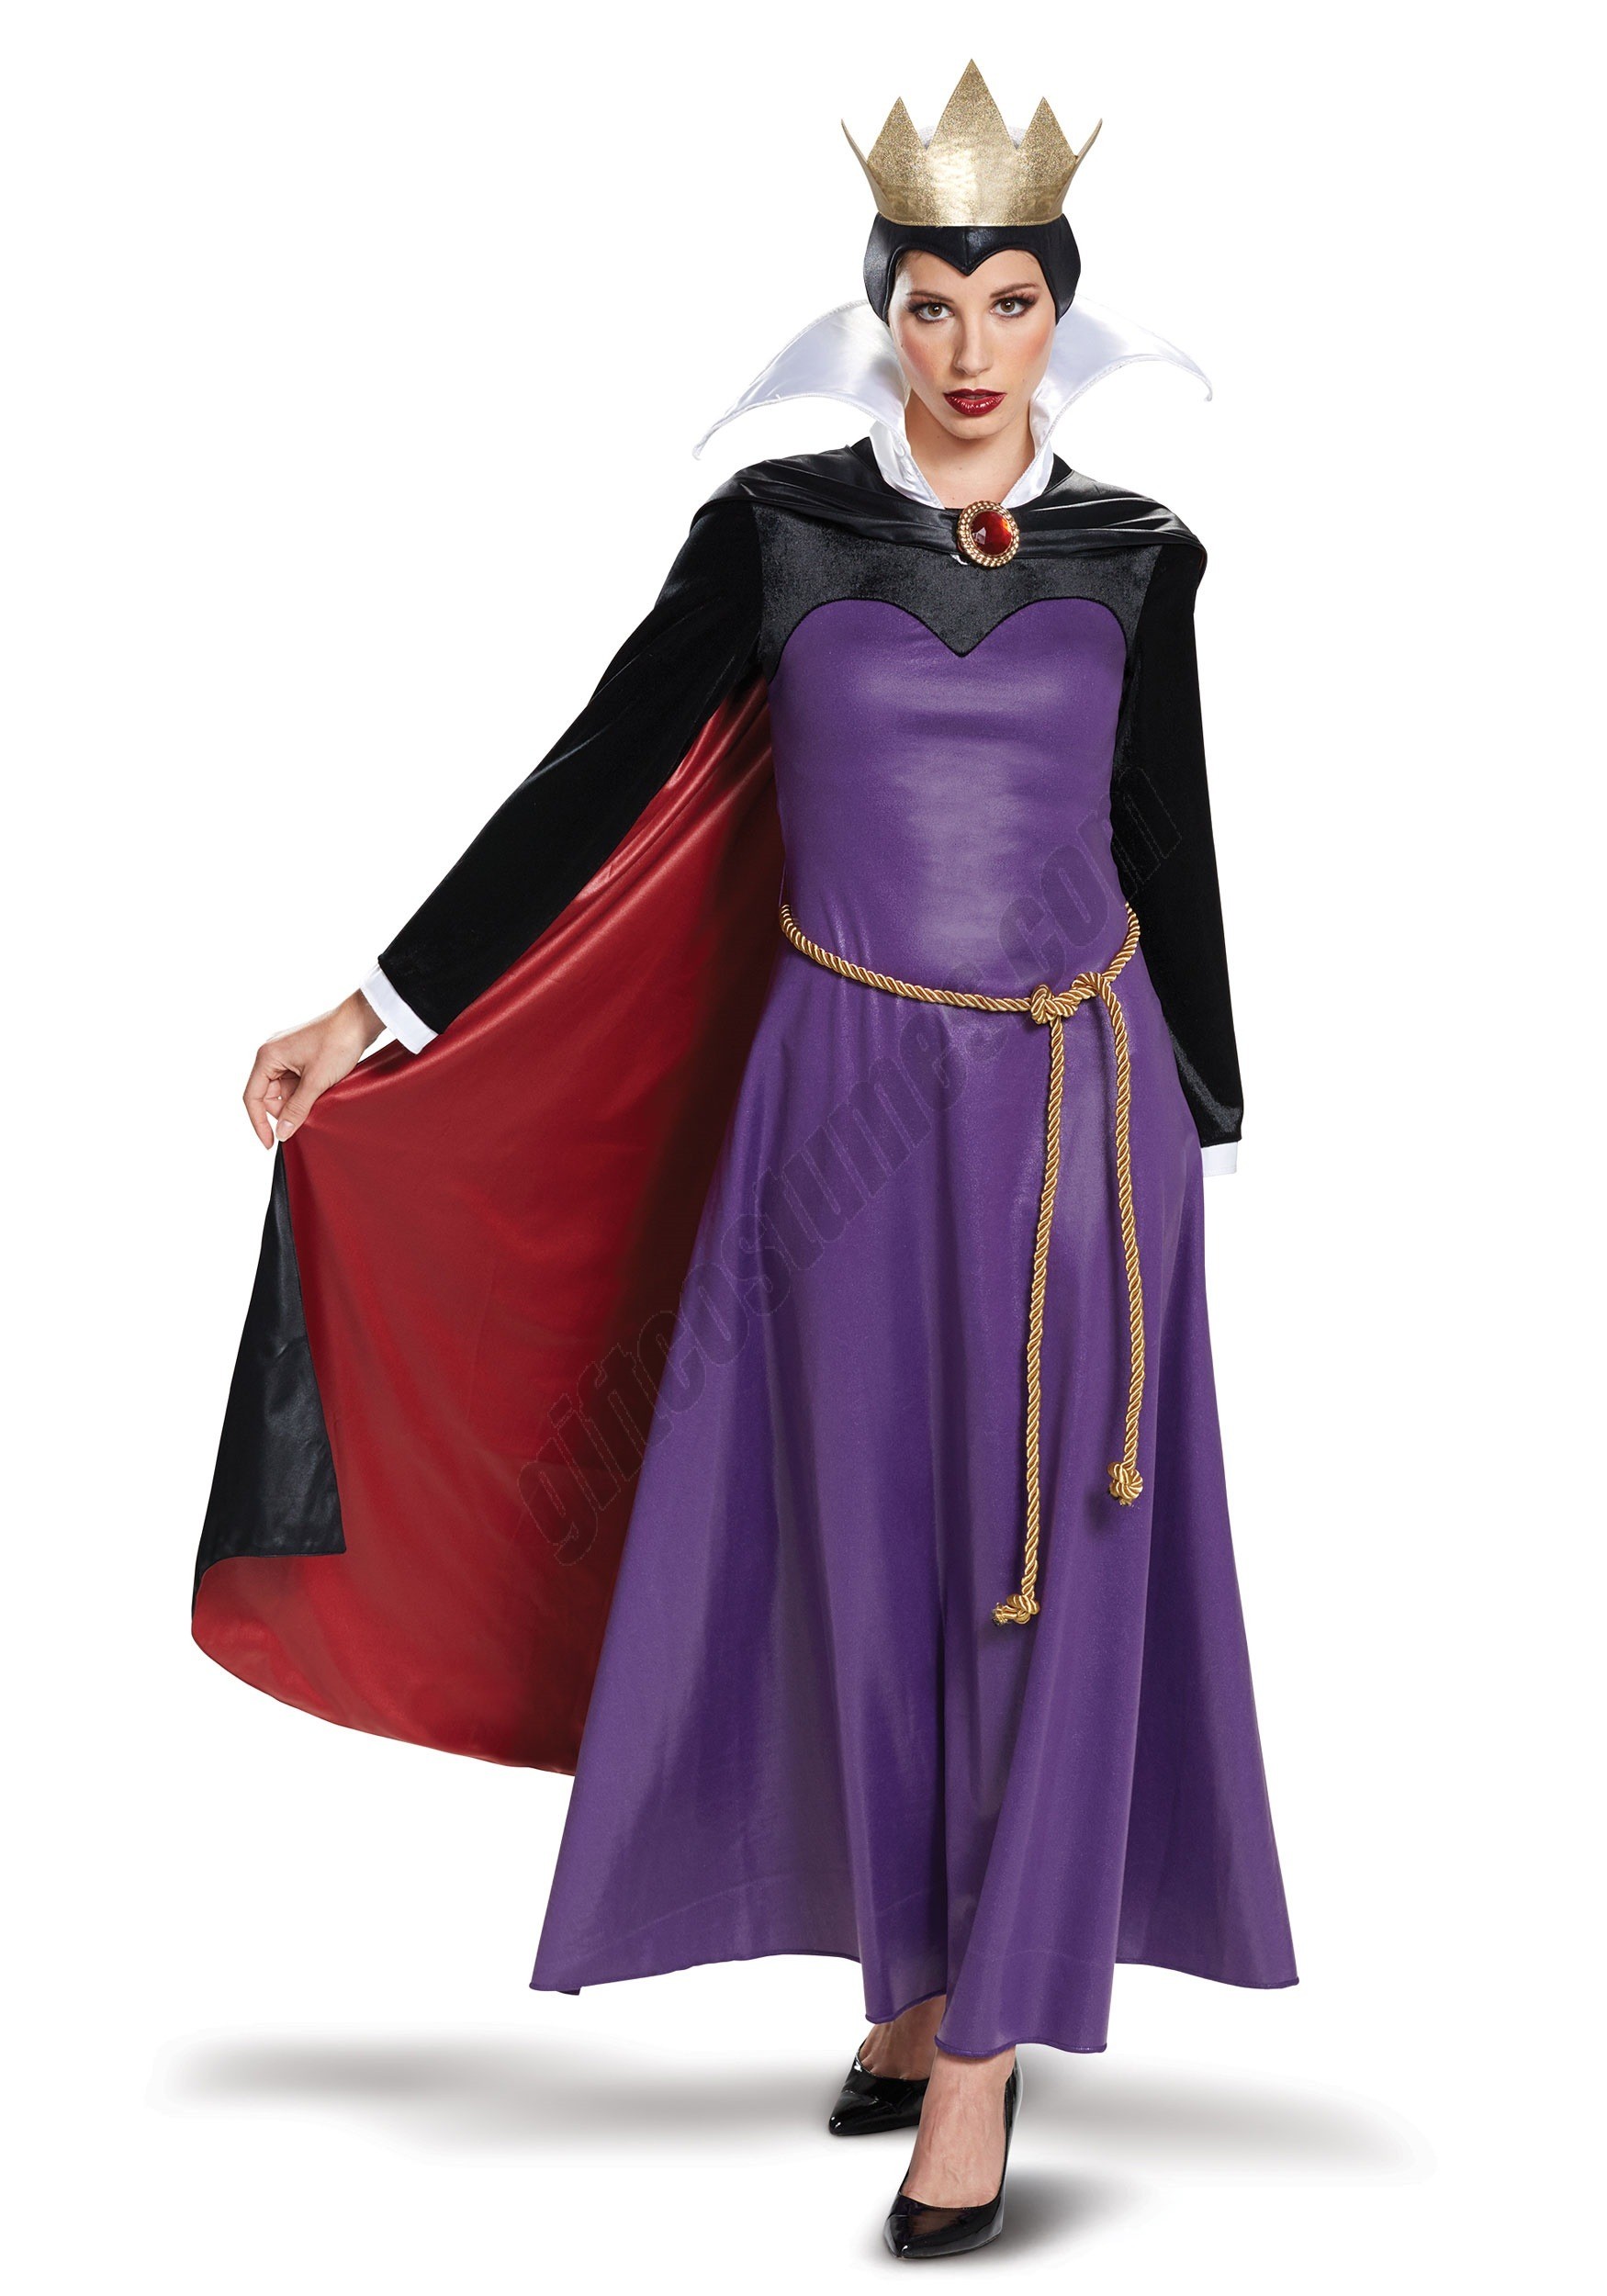 Women's Deluxe Evil Queen Costume - Women's Deluxe Evil Queen Costume